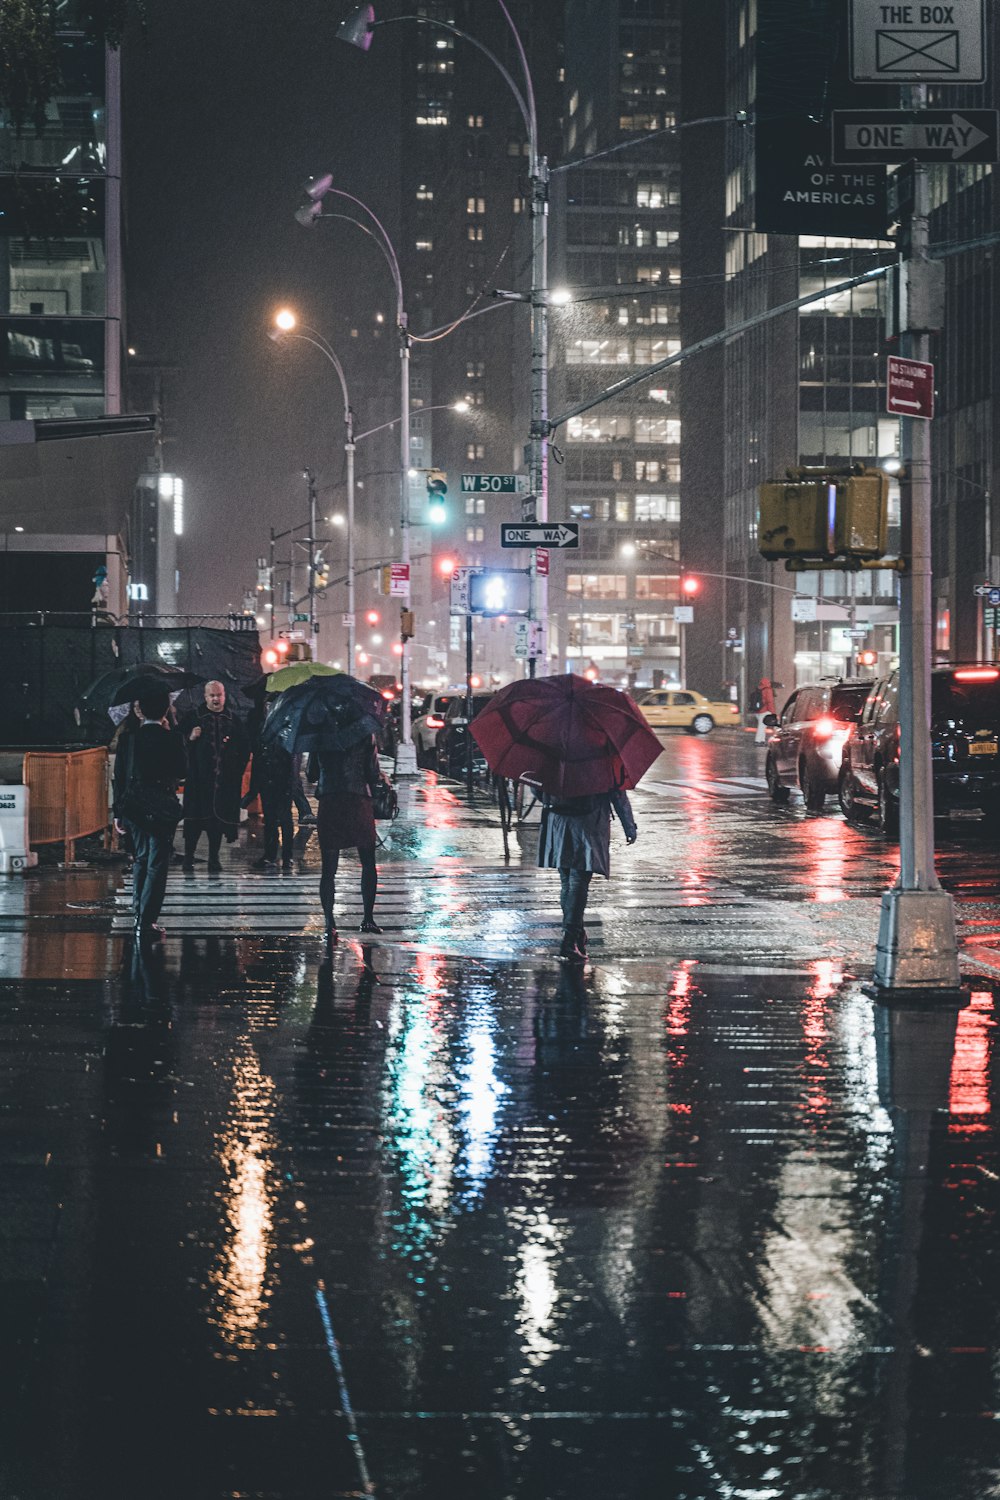 Menschen, die nachts auf der Straße spazieren gehen